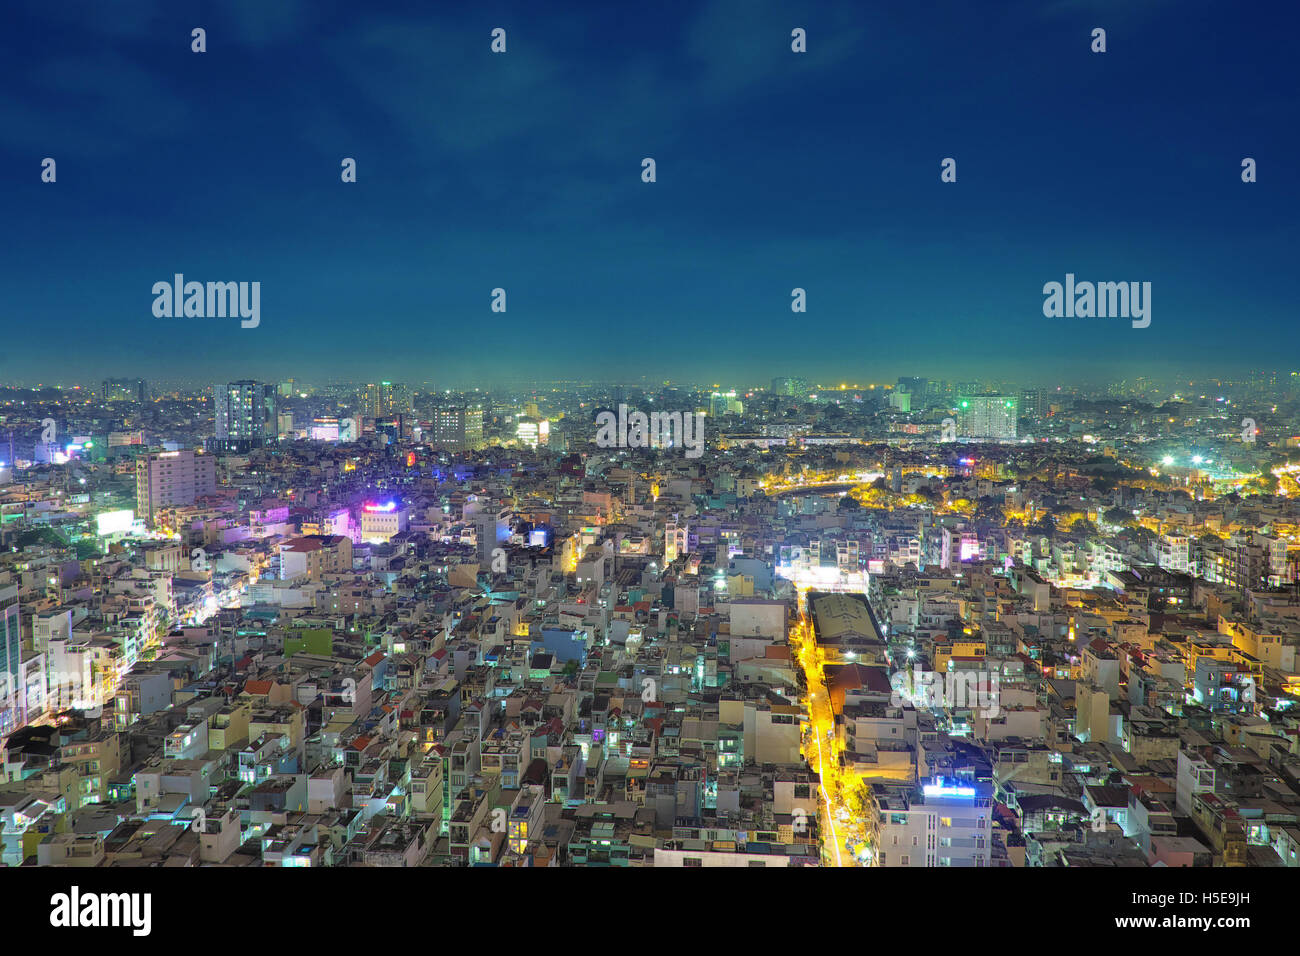 Ho Chi Minh City at night Stock Photo